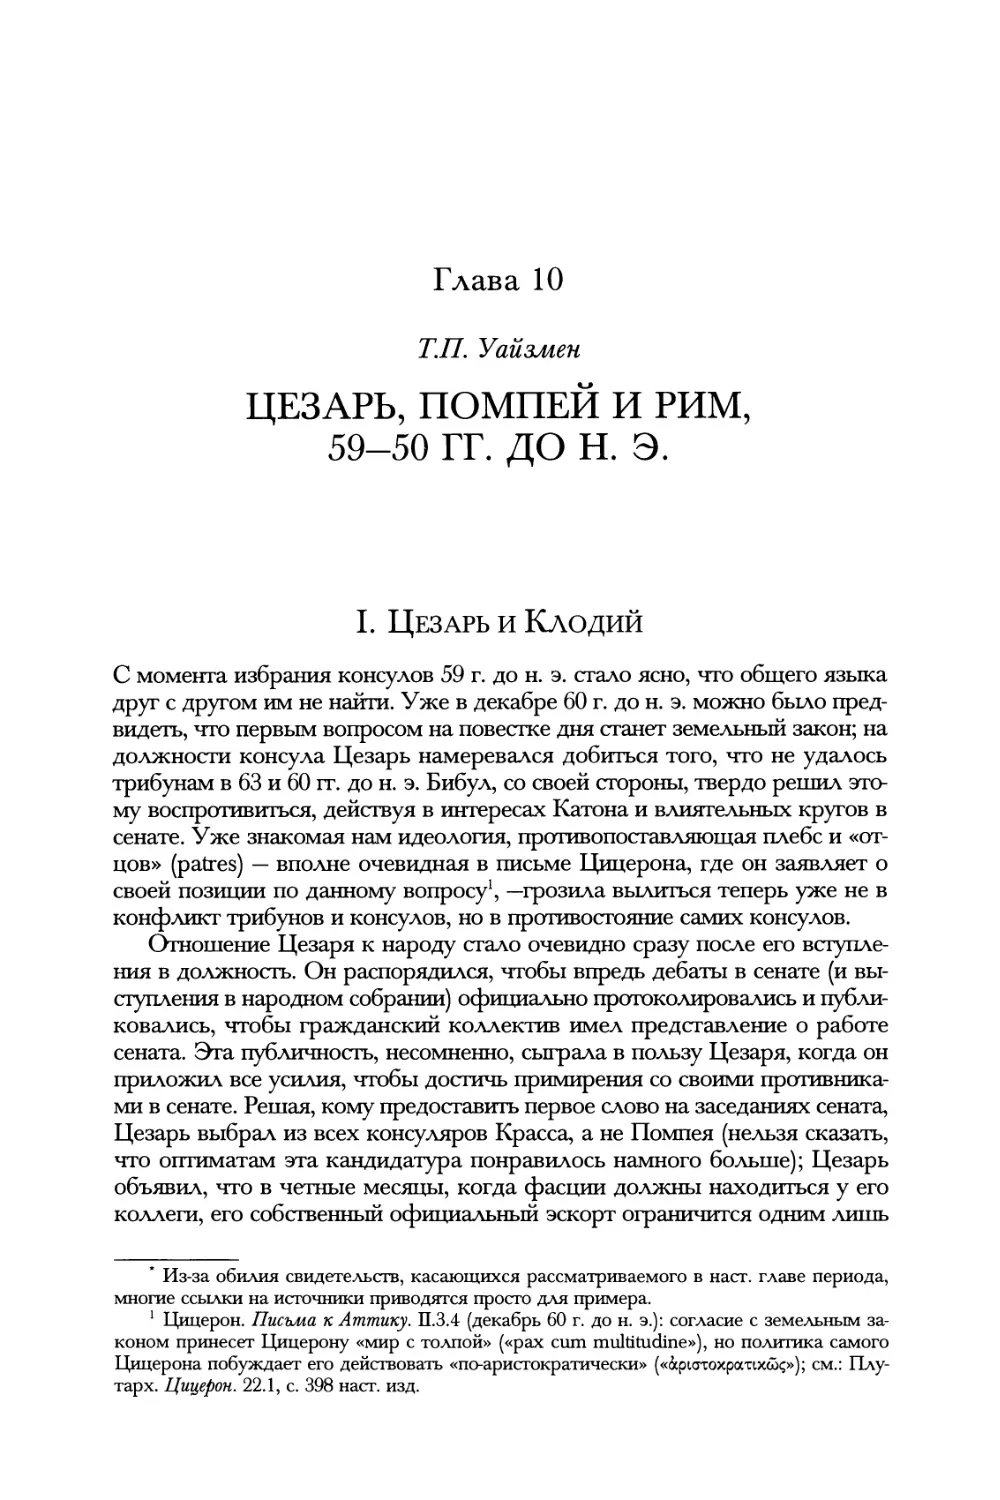 Глава 10. Цезарь, Помпей и Рим, 59—50 гг. до н. э. Т.П. Уайзмен